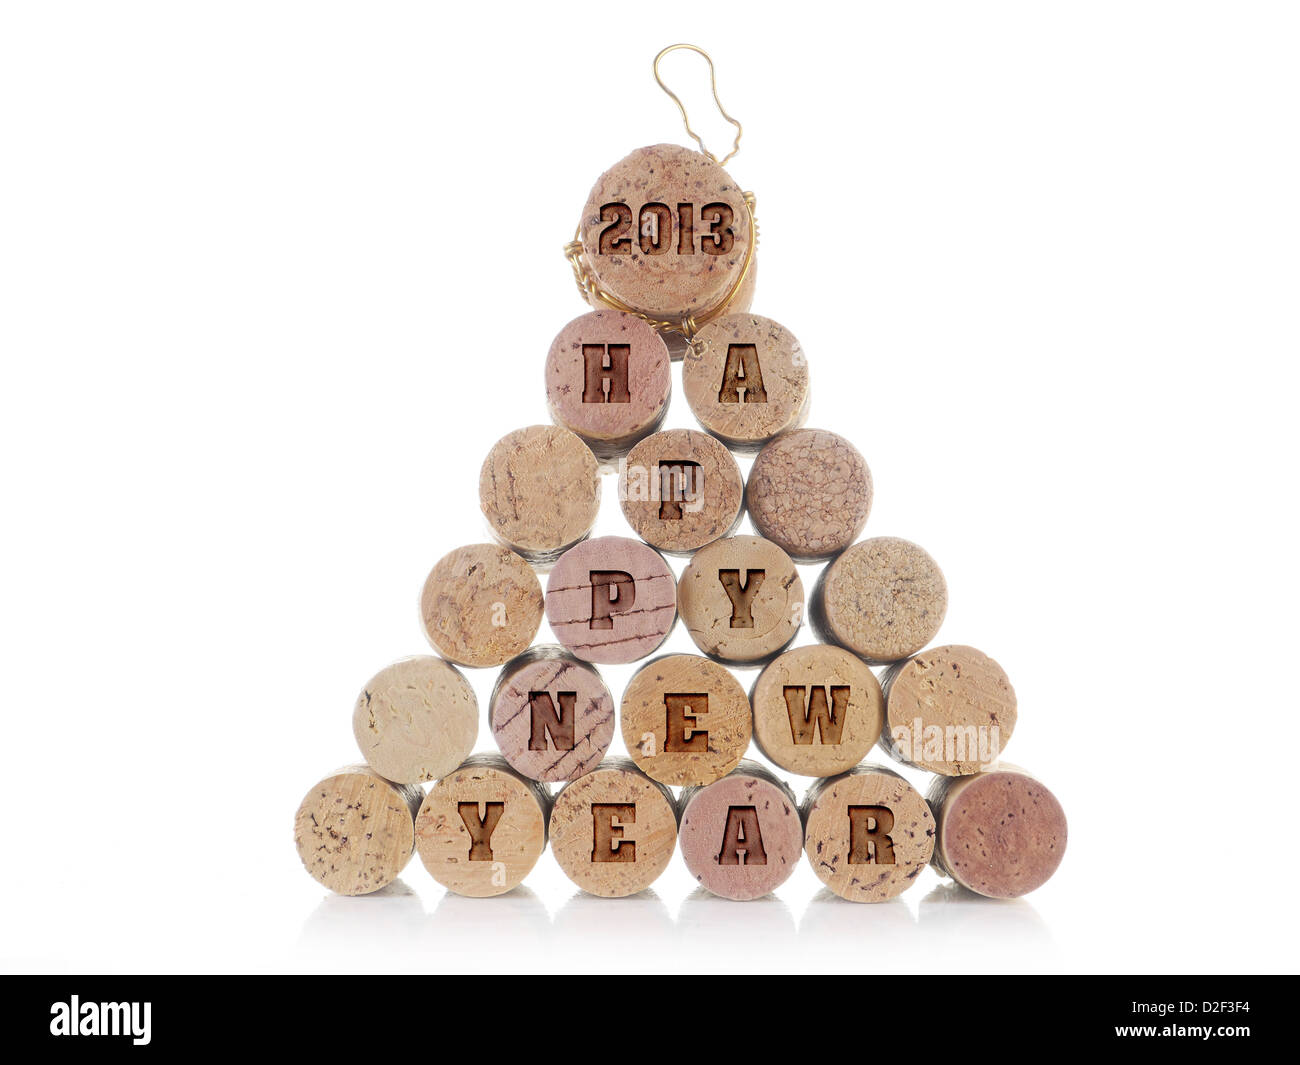 Wein und Champagne-Korken angeordnet in Pyramide mit Aufdruck 2013 Happy New Year Wörter auf weißem Hintergrund Stockfoto